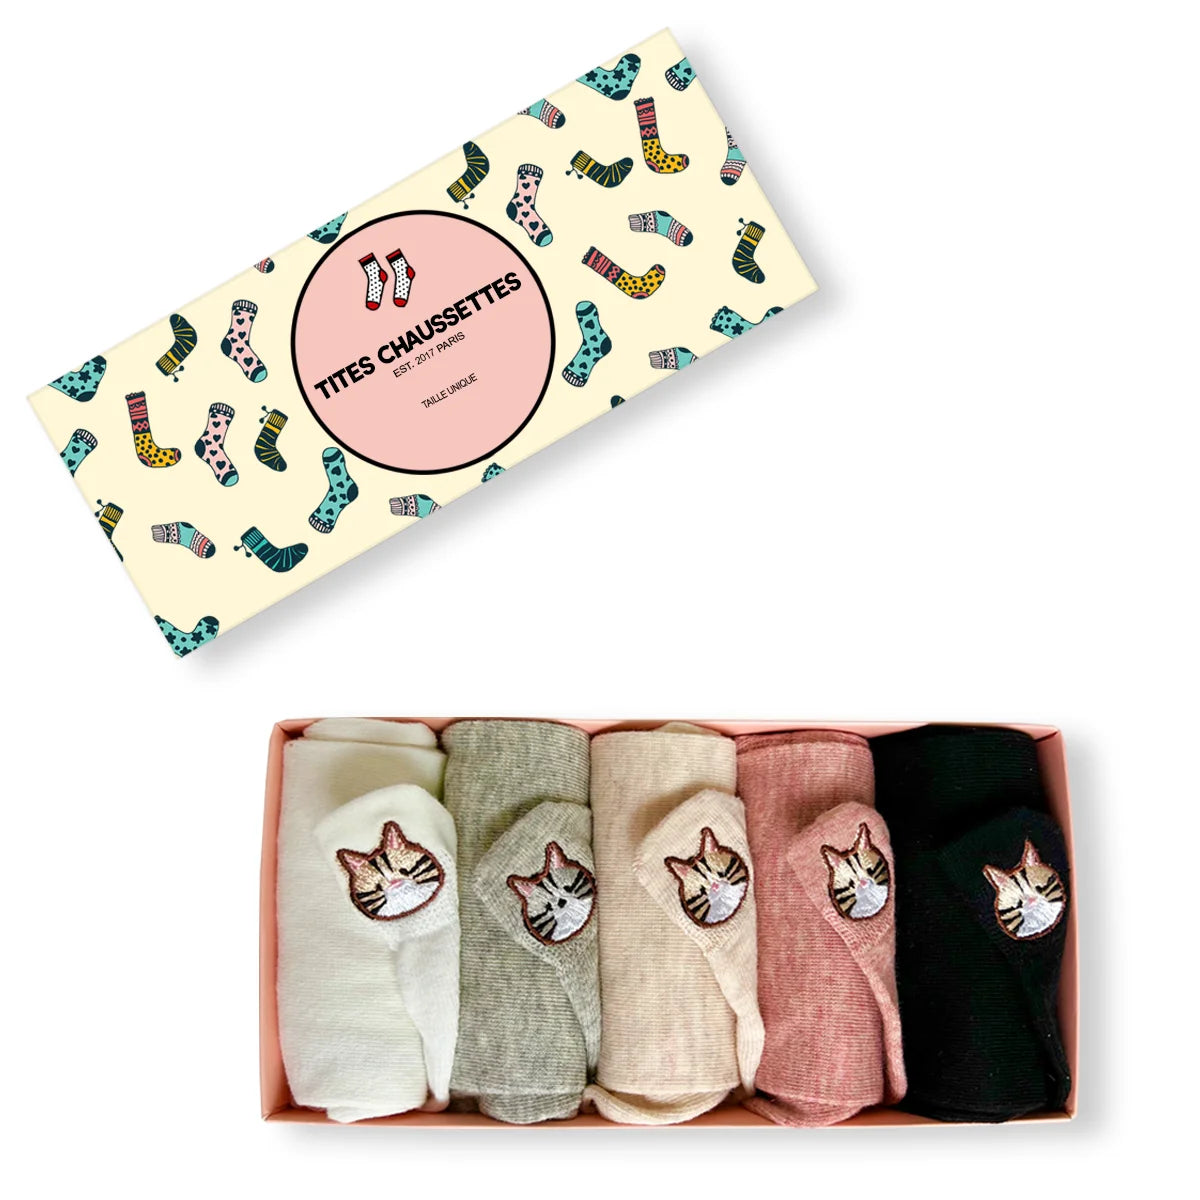 Chaussettes en coton à languette chat pour femme | Chaussettes confortables et élégantes | Idéales pour le quotidien ou les occasions spéciales | Disponibles en plusieurs couleurs et tailles